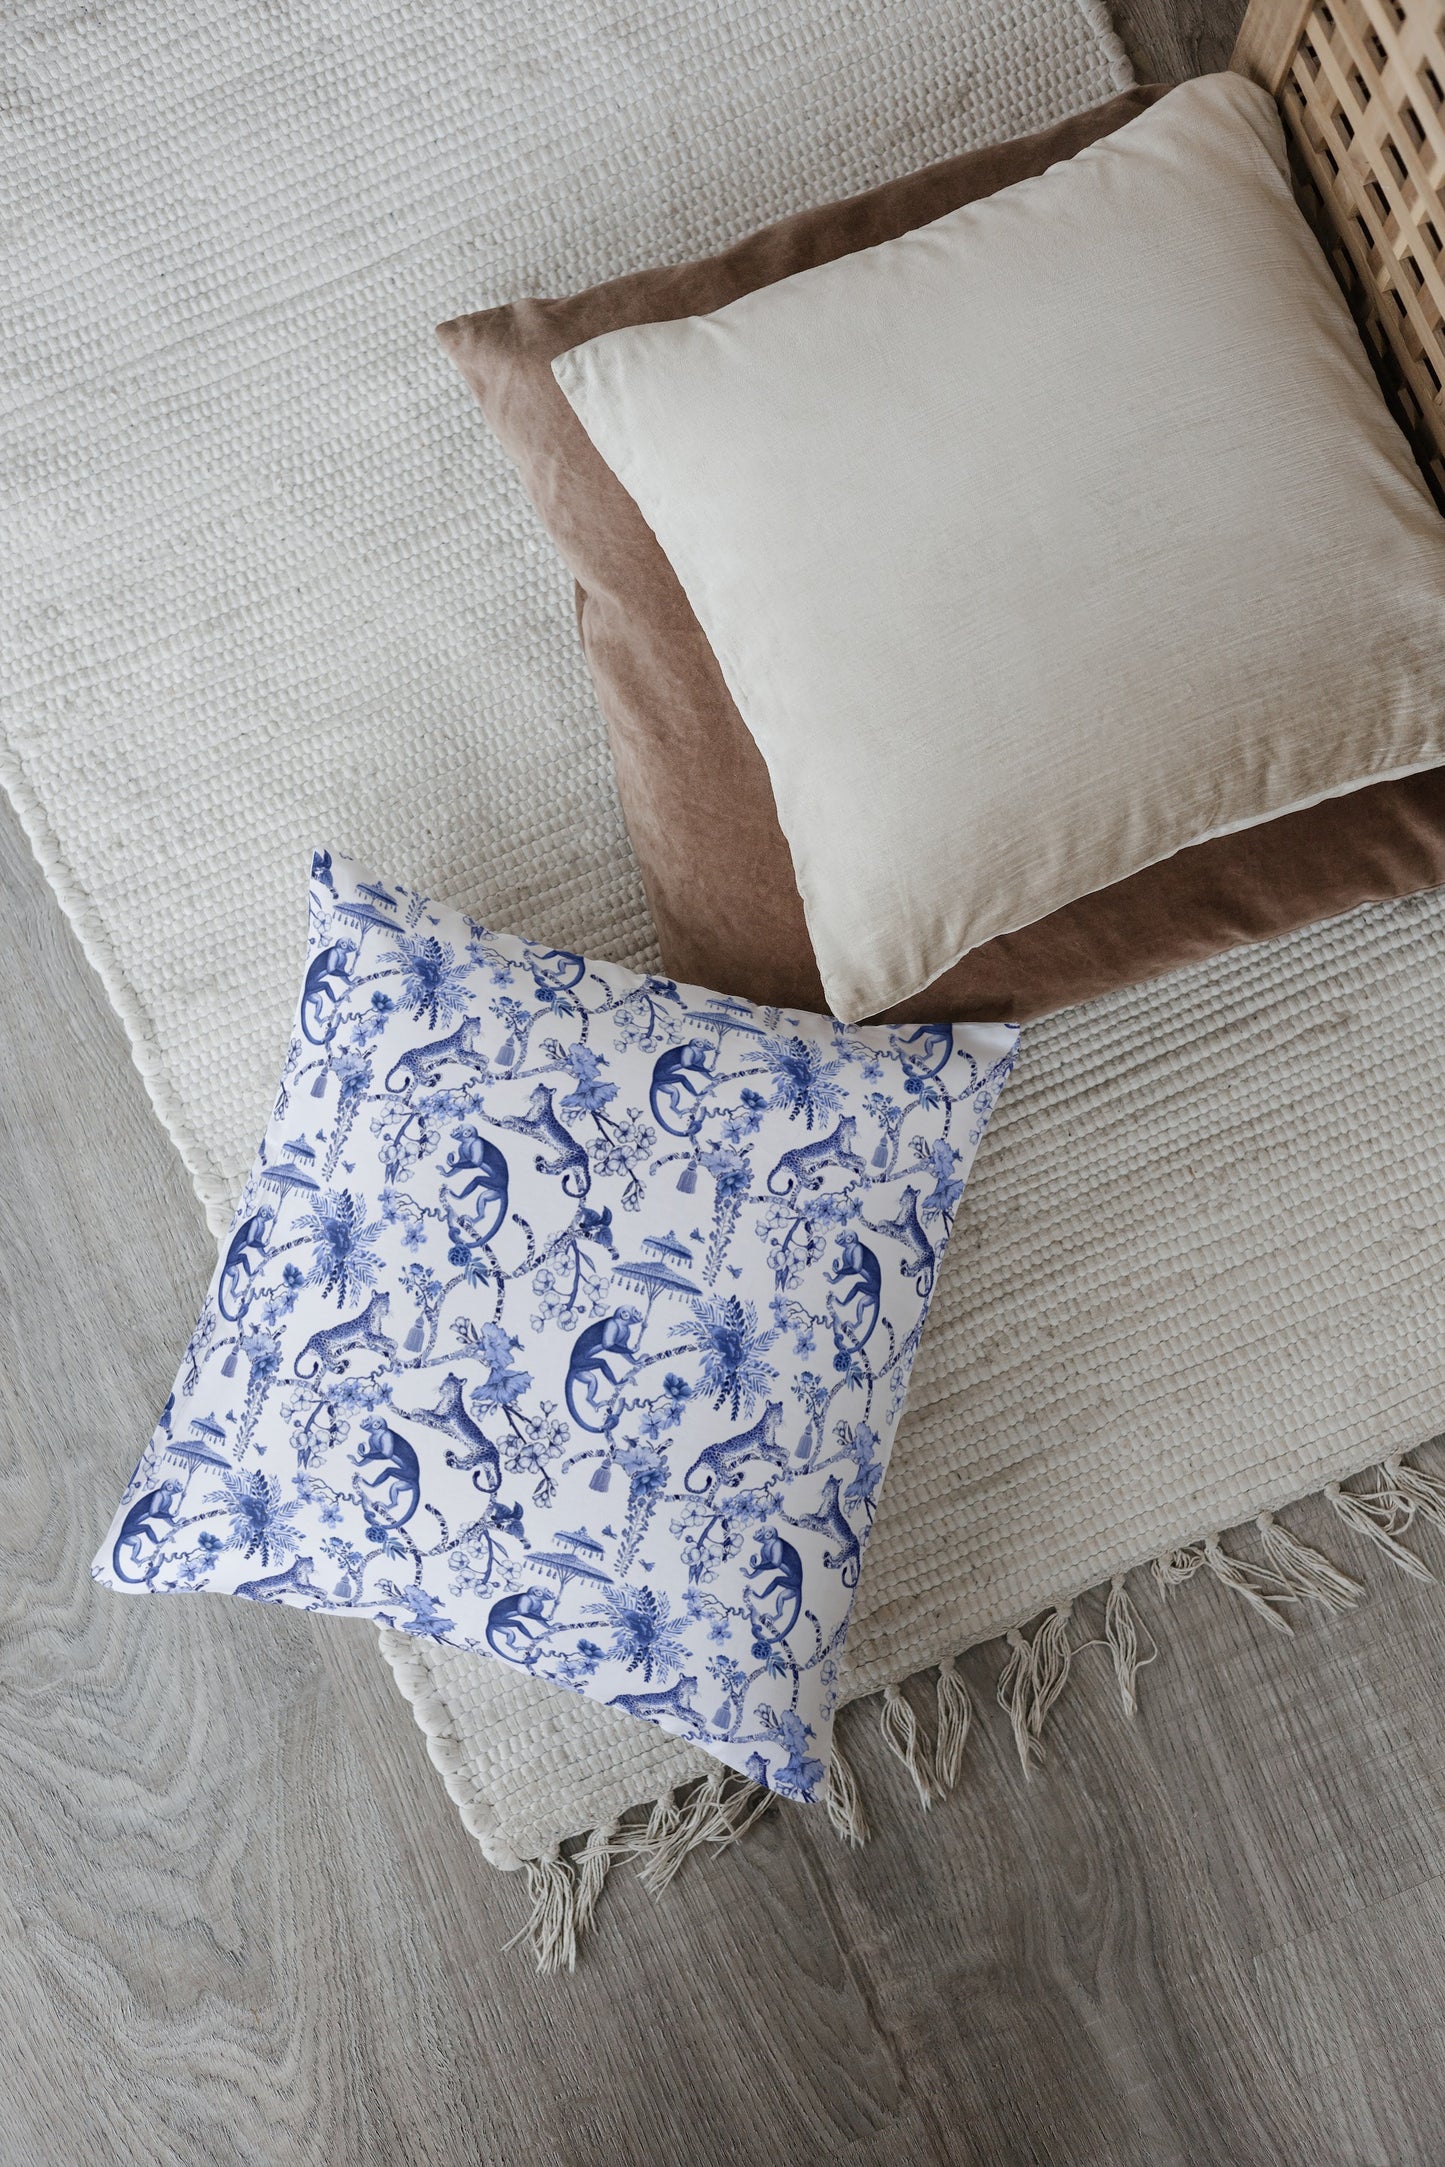 Chinoiserie Monkey Cotton Pillows Toile de Jouy Blue White